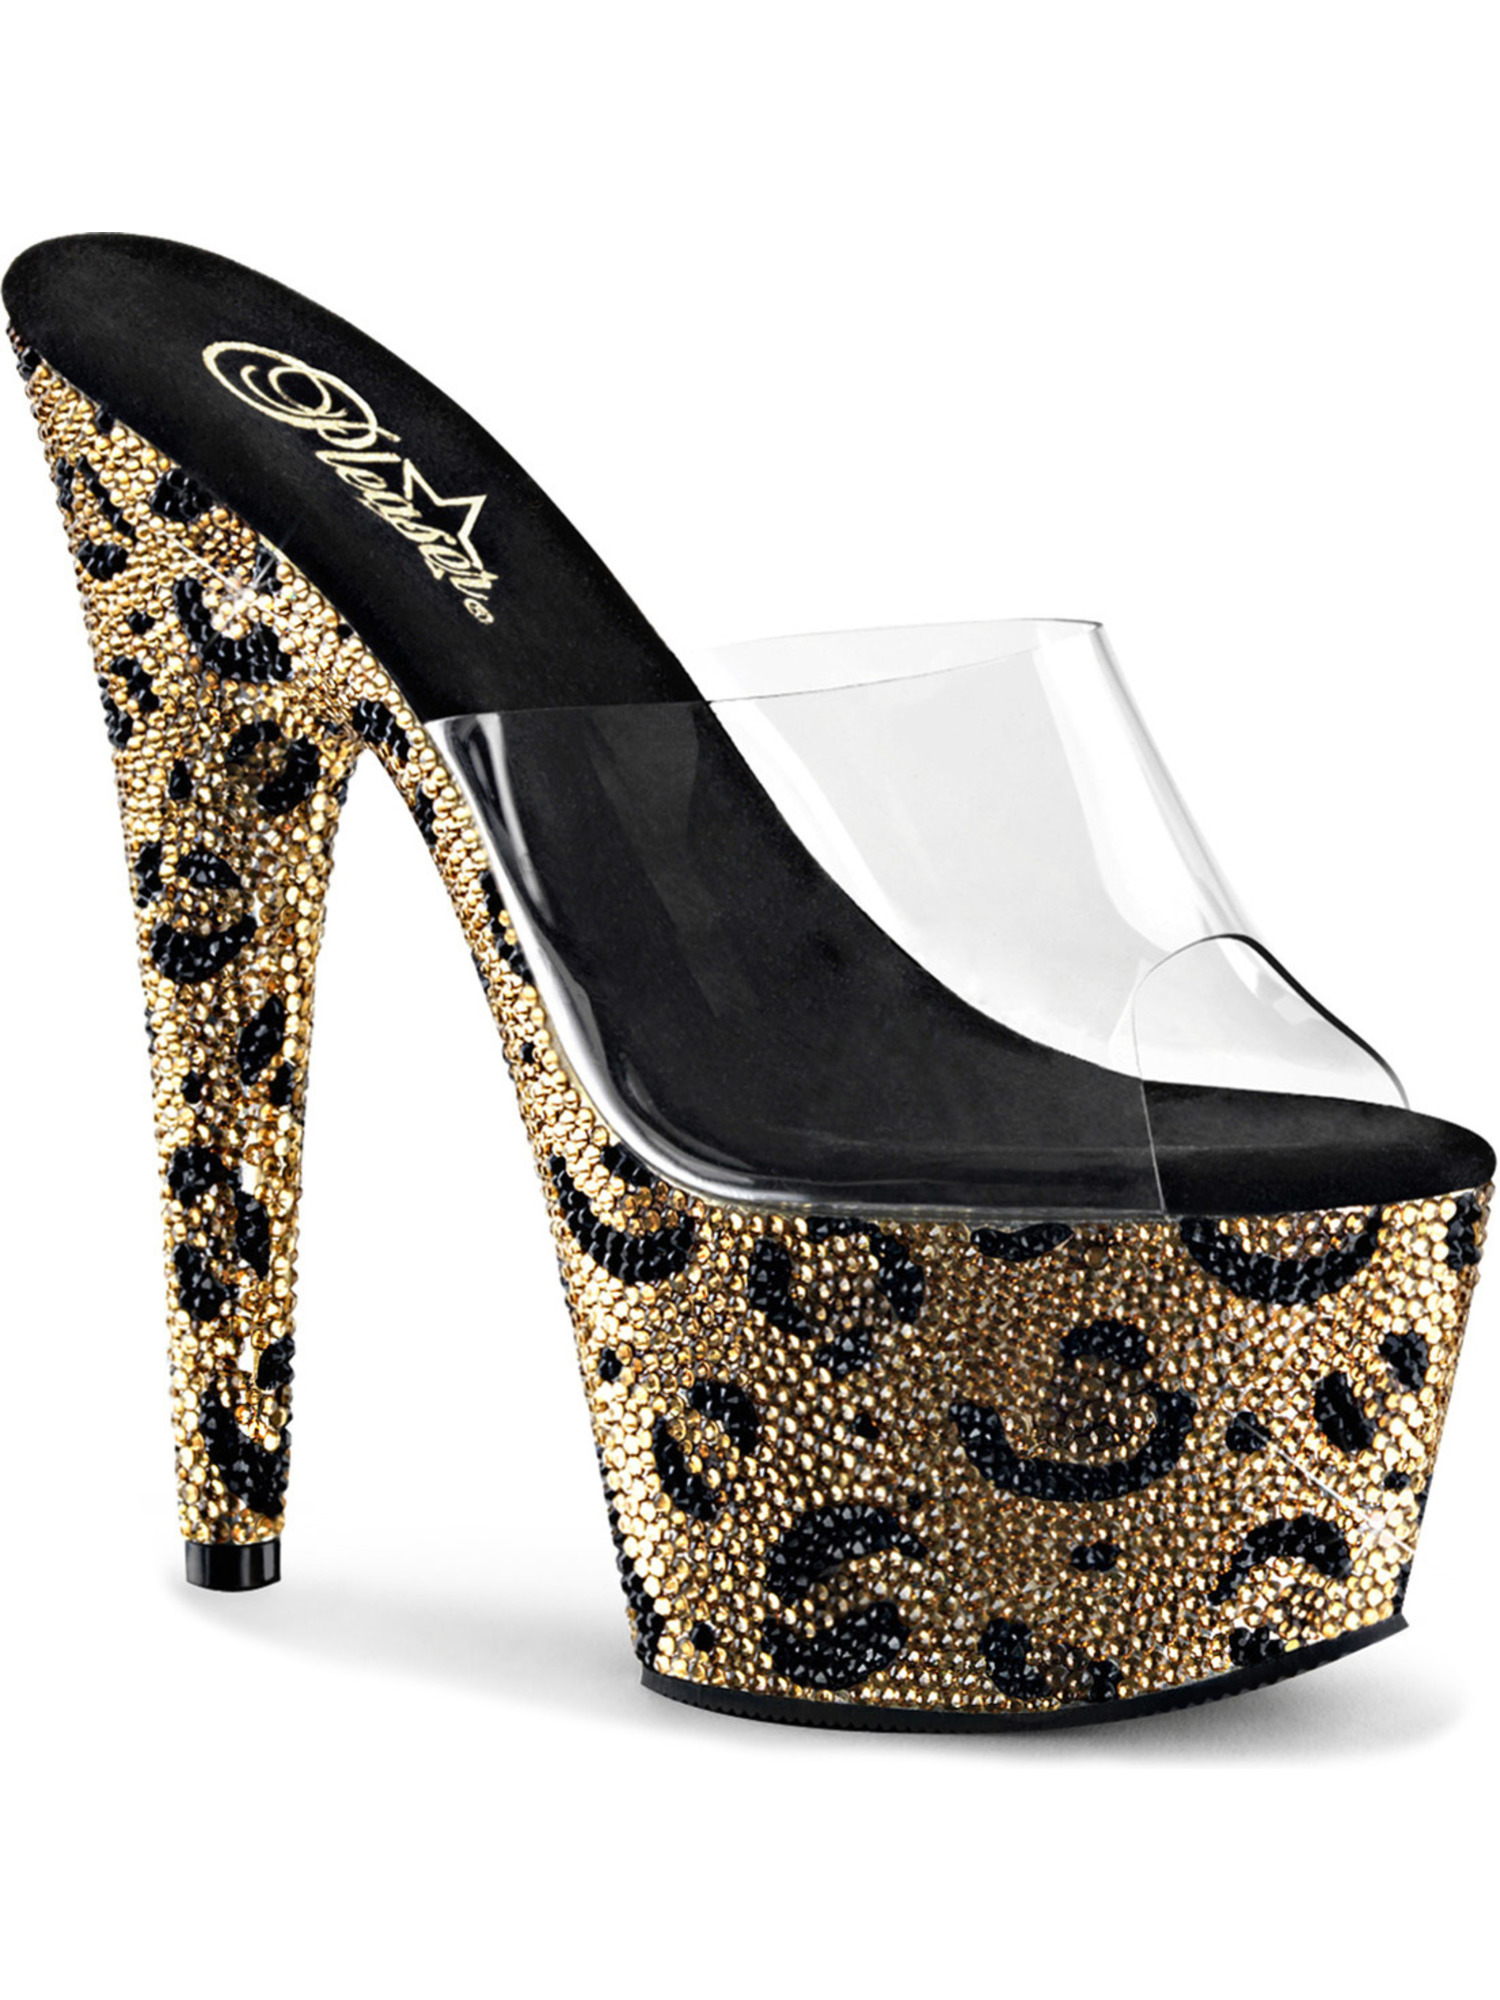 leopard print shoes size 9